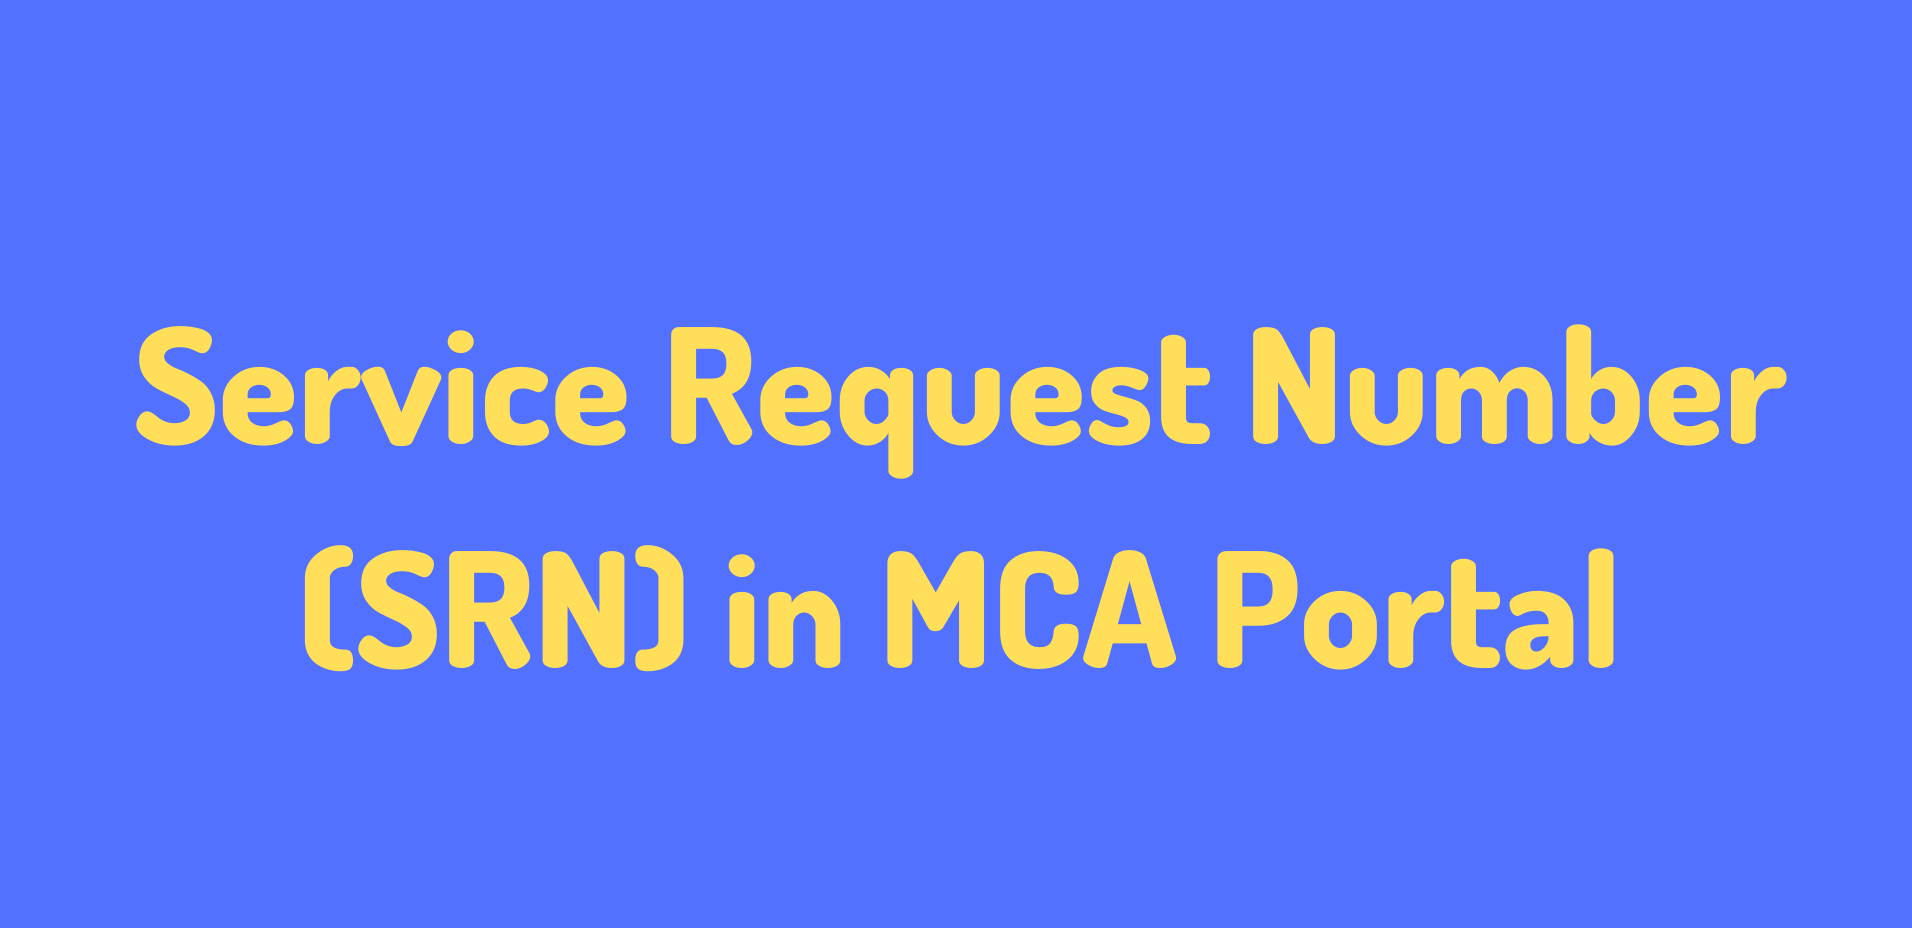 SRN Service Request Number in MCA.